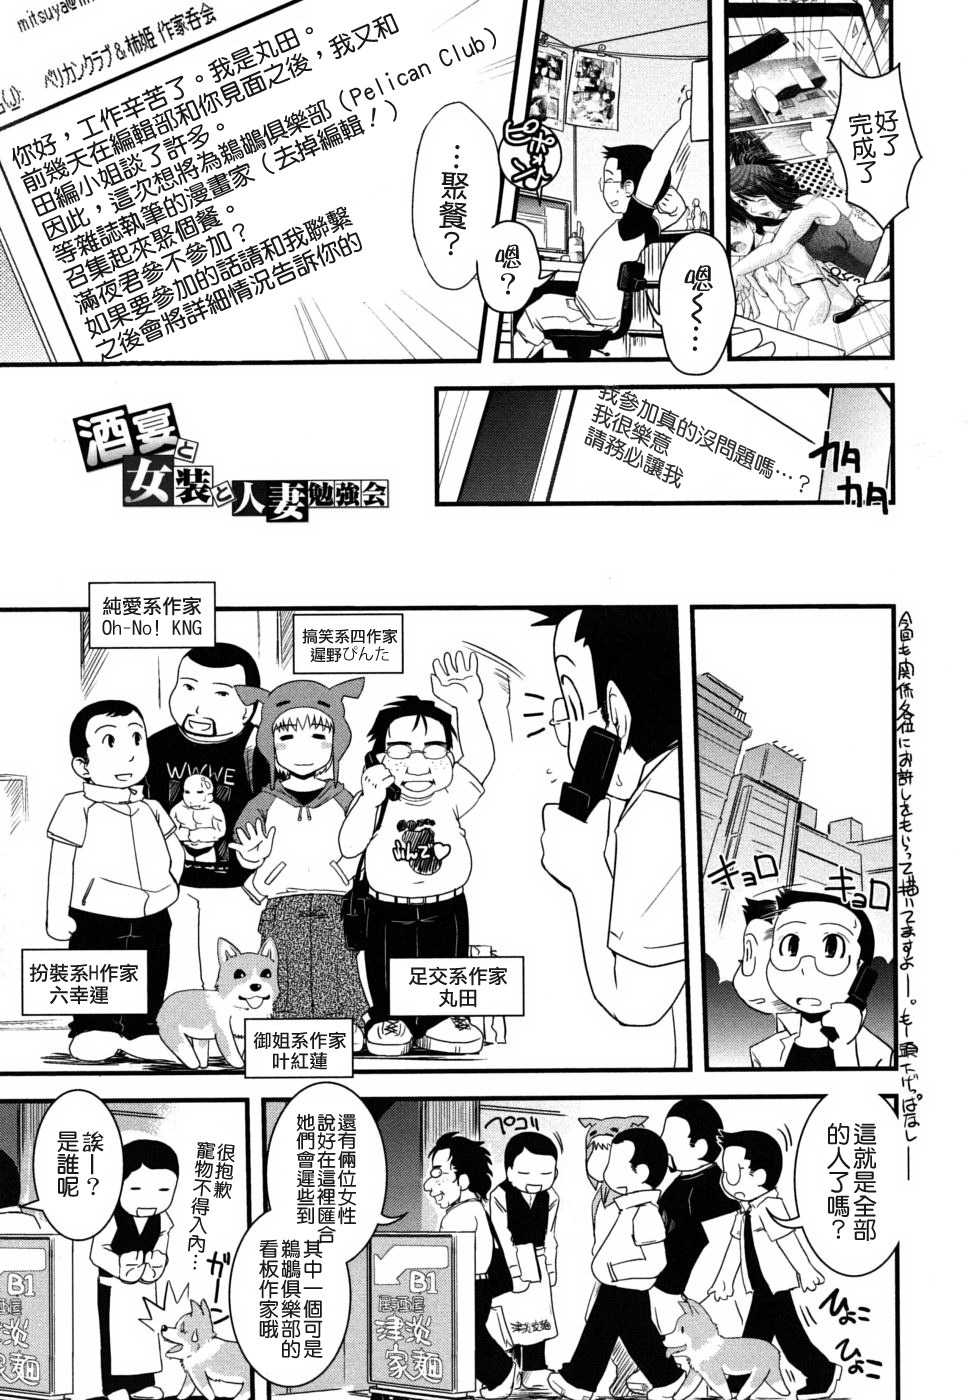 [Ikuya Daikokudou] Ane to Josou to Ero-Mangaka [Chinese] [幾夜大黑堂] 姐と女裝とエロ漫畫家 [貪狼閣 第071號]